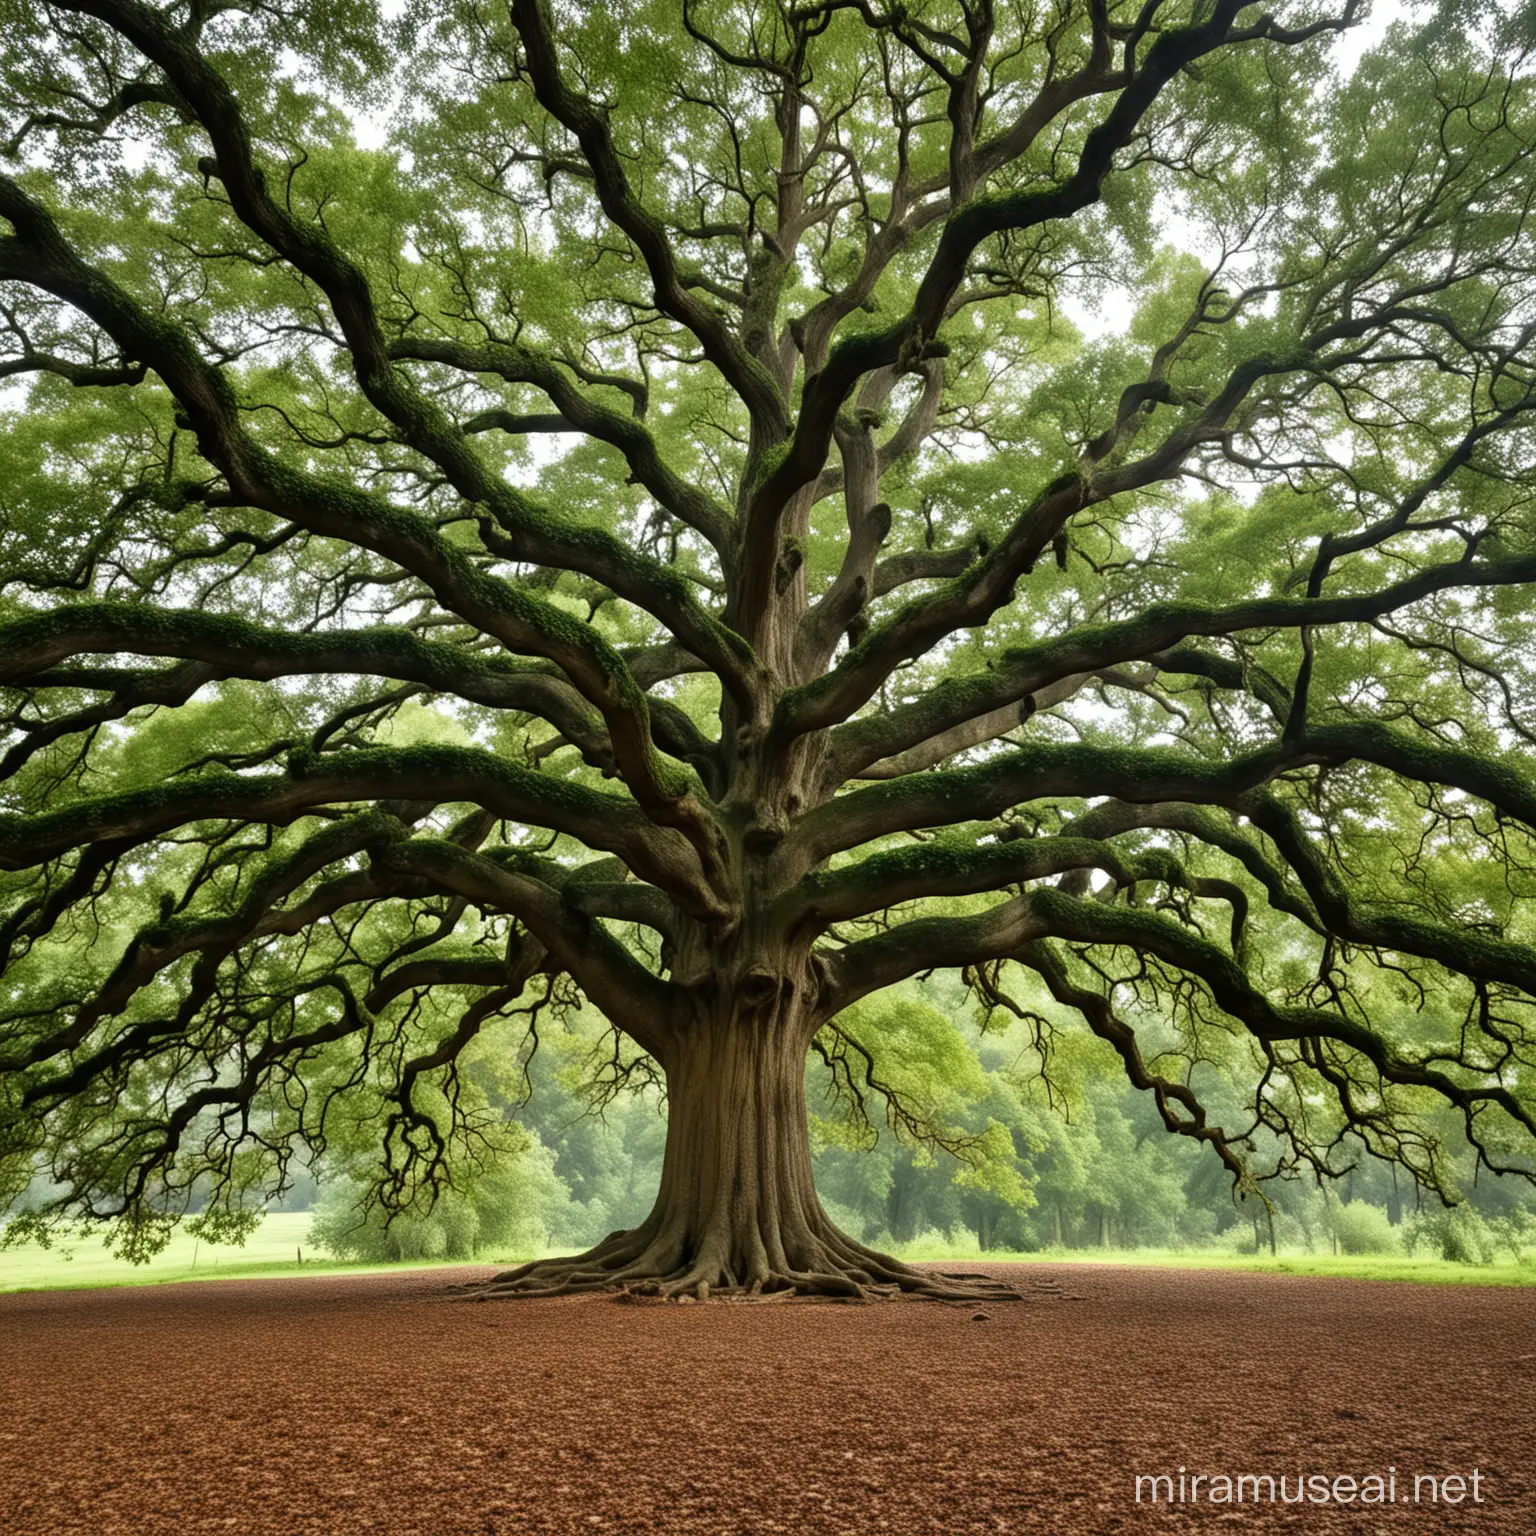 a giant oak tree
